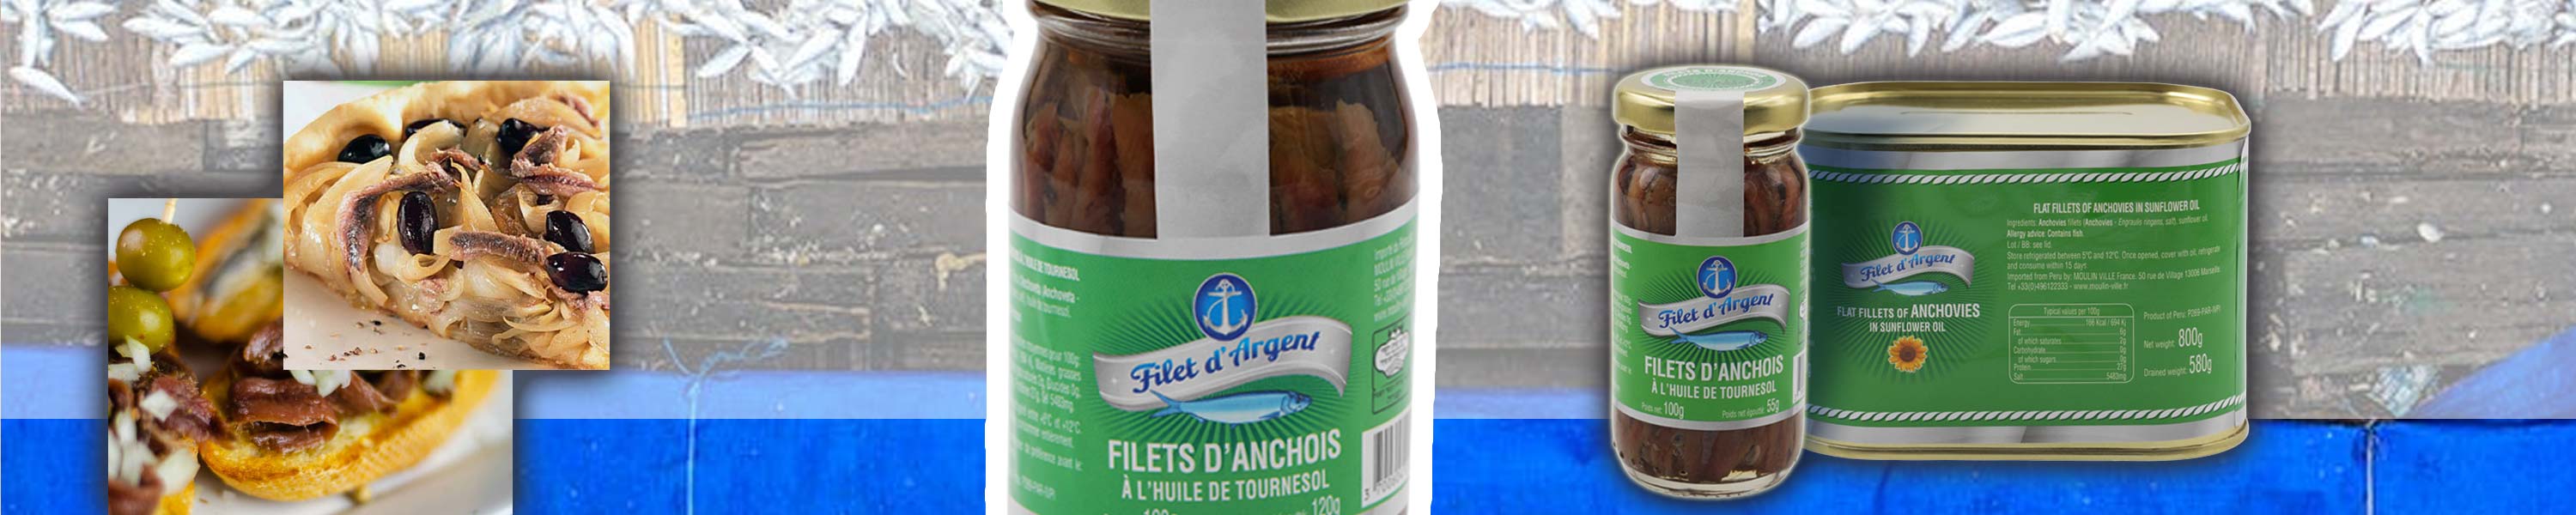 Grossiste anchois en conserve FILET D'ARGENT: bocal d'anchois pour recettes maison, grosse boîte d'anchois 800 g pour traiteurs, pizzerias, restaurant...